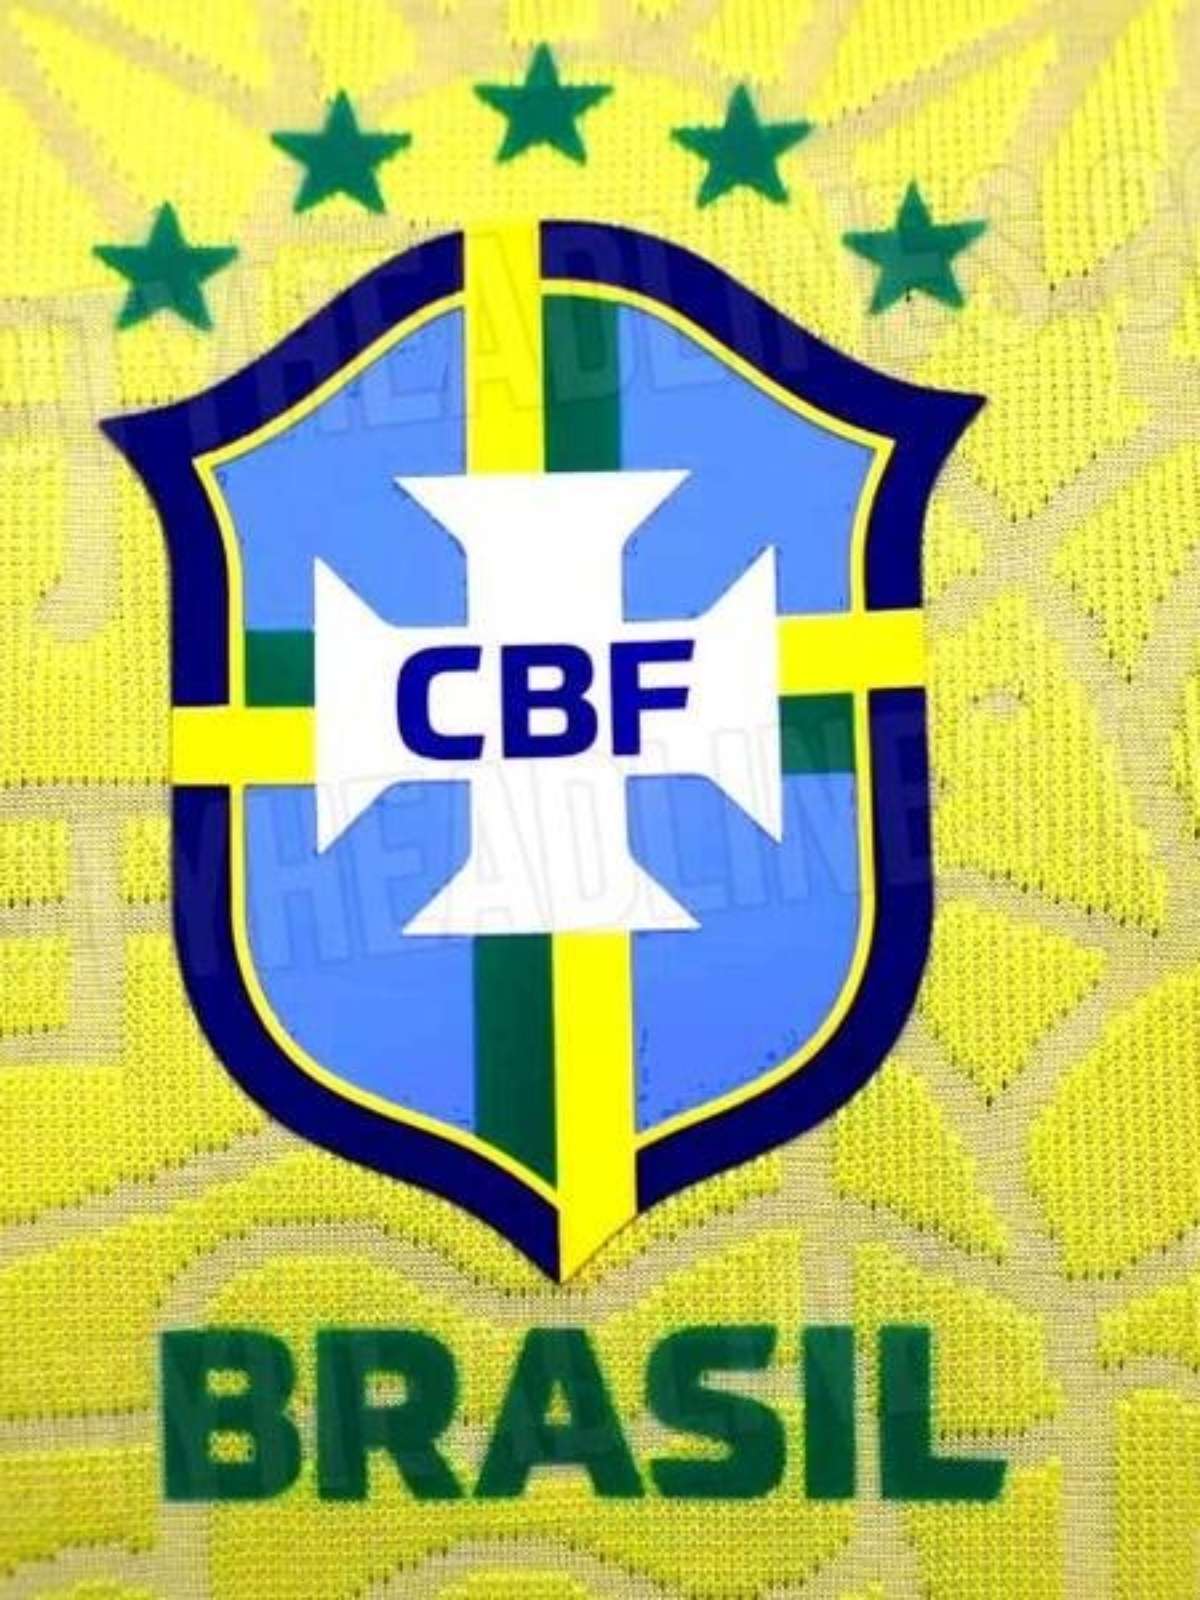 Site revela possível nova camisa da seleção brasileira